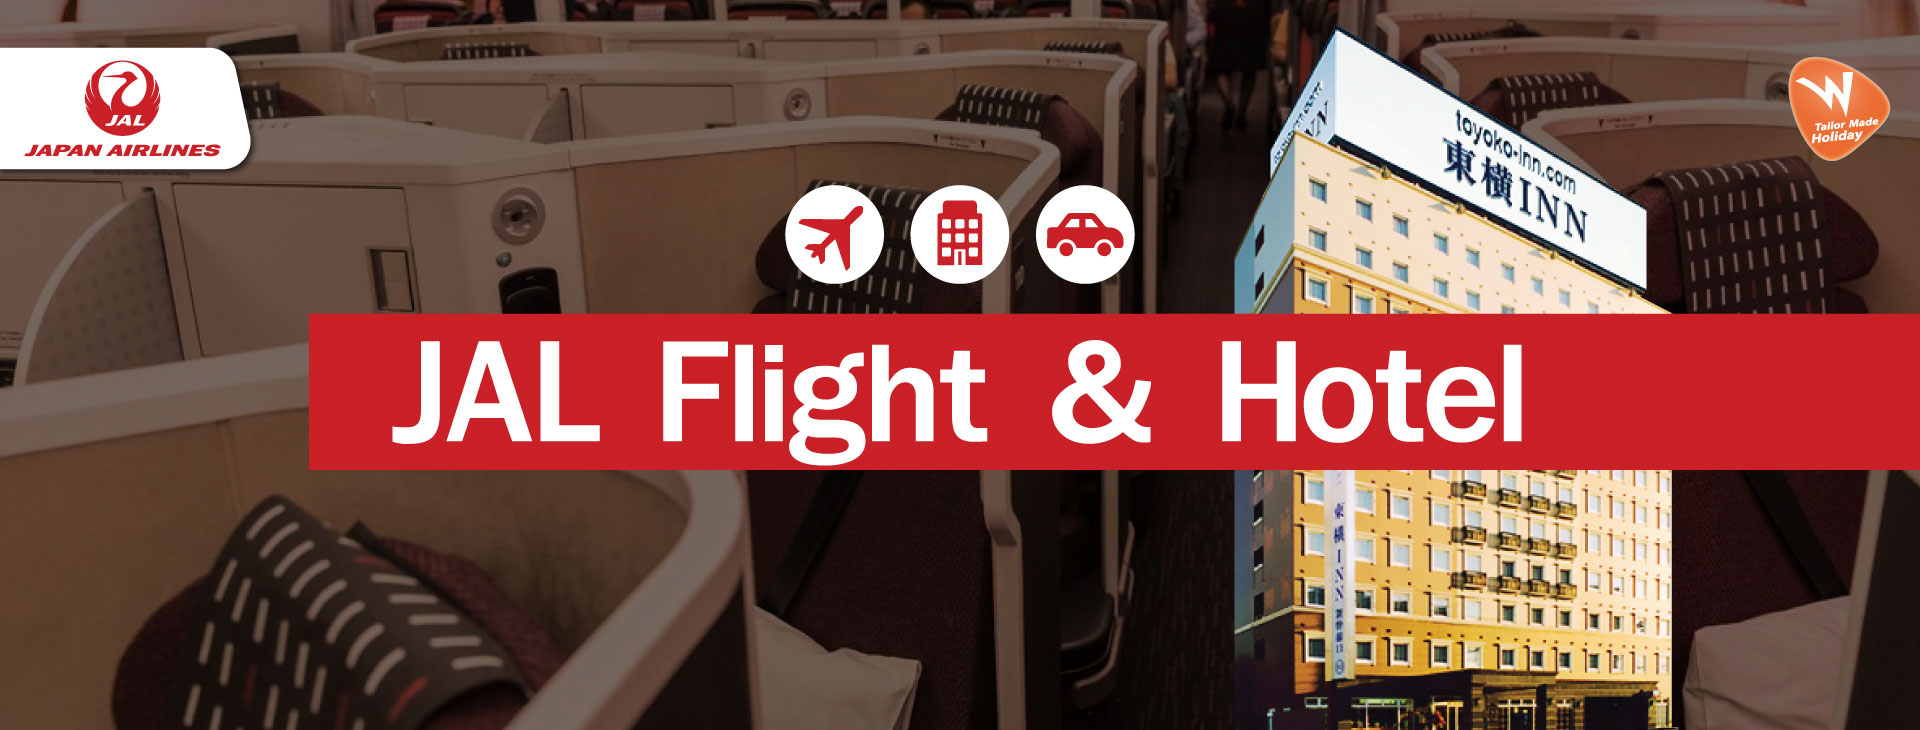 Jal Flight & Hotel, Toyoko inn, ตั๋วเครื่องบิน, โรงแรมญี่ปุ่น, เที่ยวญี่ปุ่น, โปรญี่ปุ่น, โปรราคาถูก